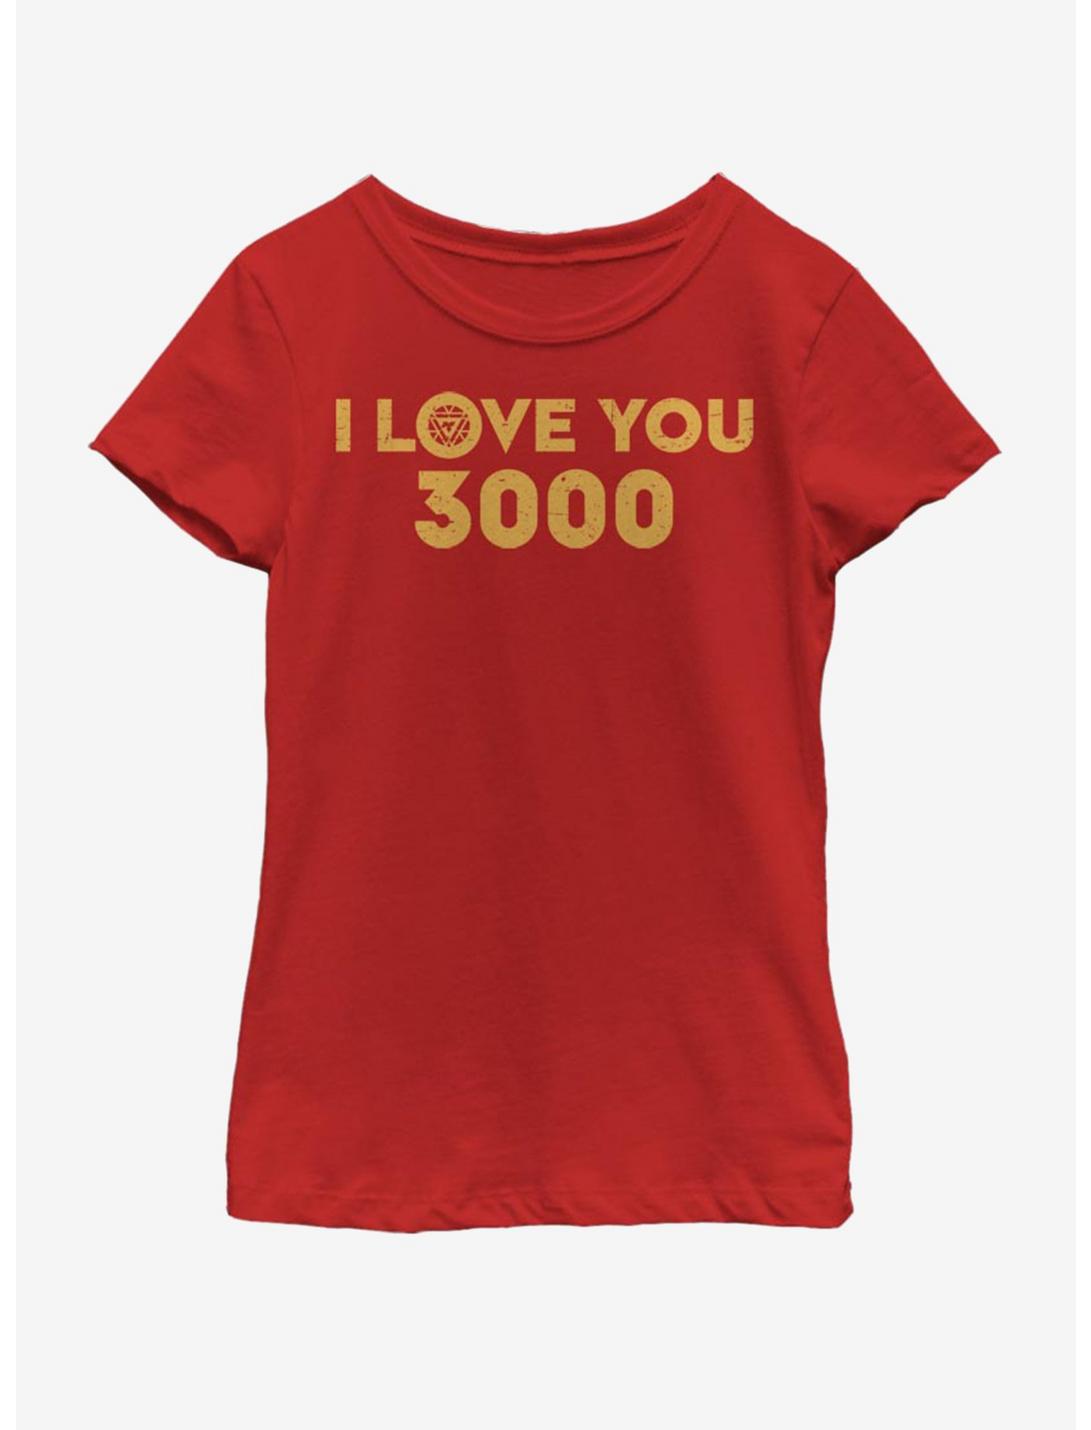 Marvel Avengers: Endgame Love 3000 Youth Girls T-Shirt, RED, hi-res